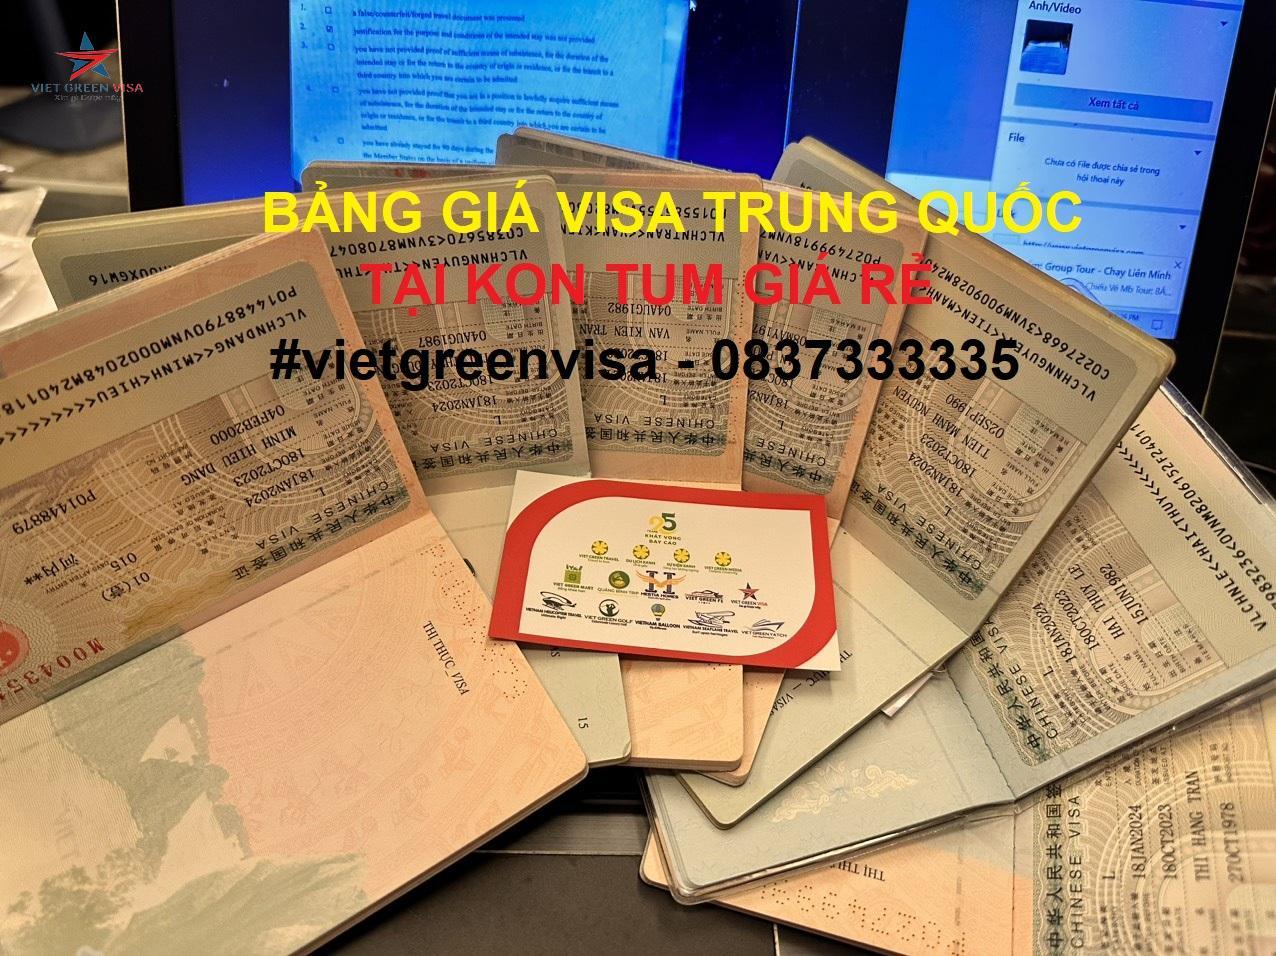 Dịch vụ xin visa Trung Quốc tại Kon Tum chuyên nghiệp